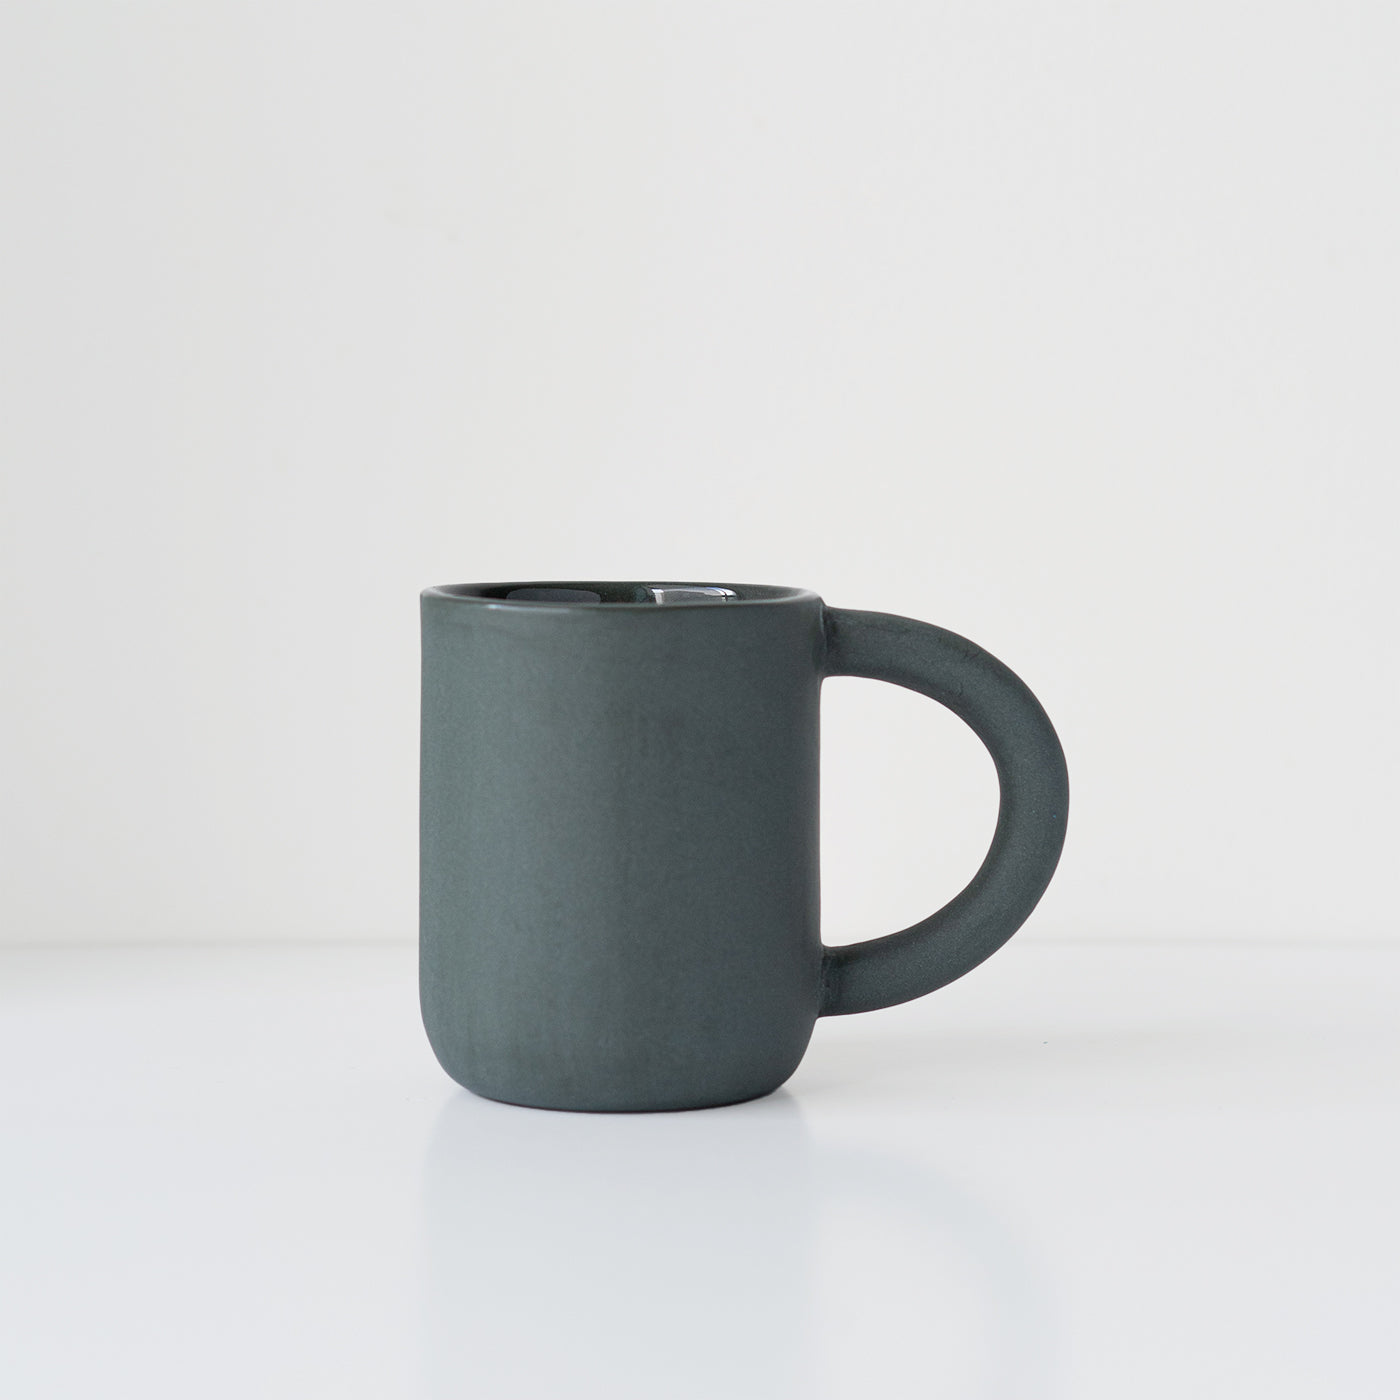 laureanne kootstra design hand made ceramic black porcelain mug